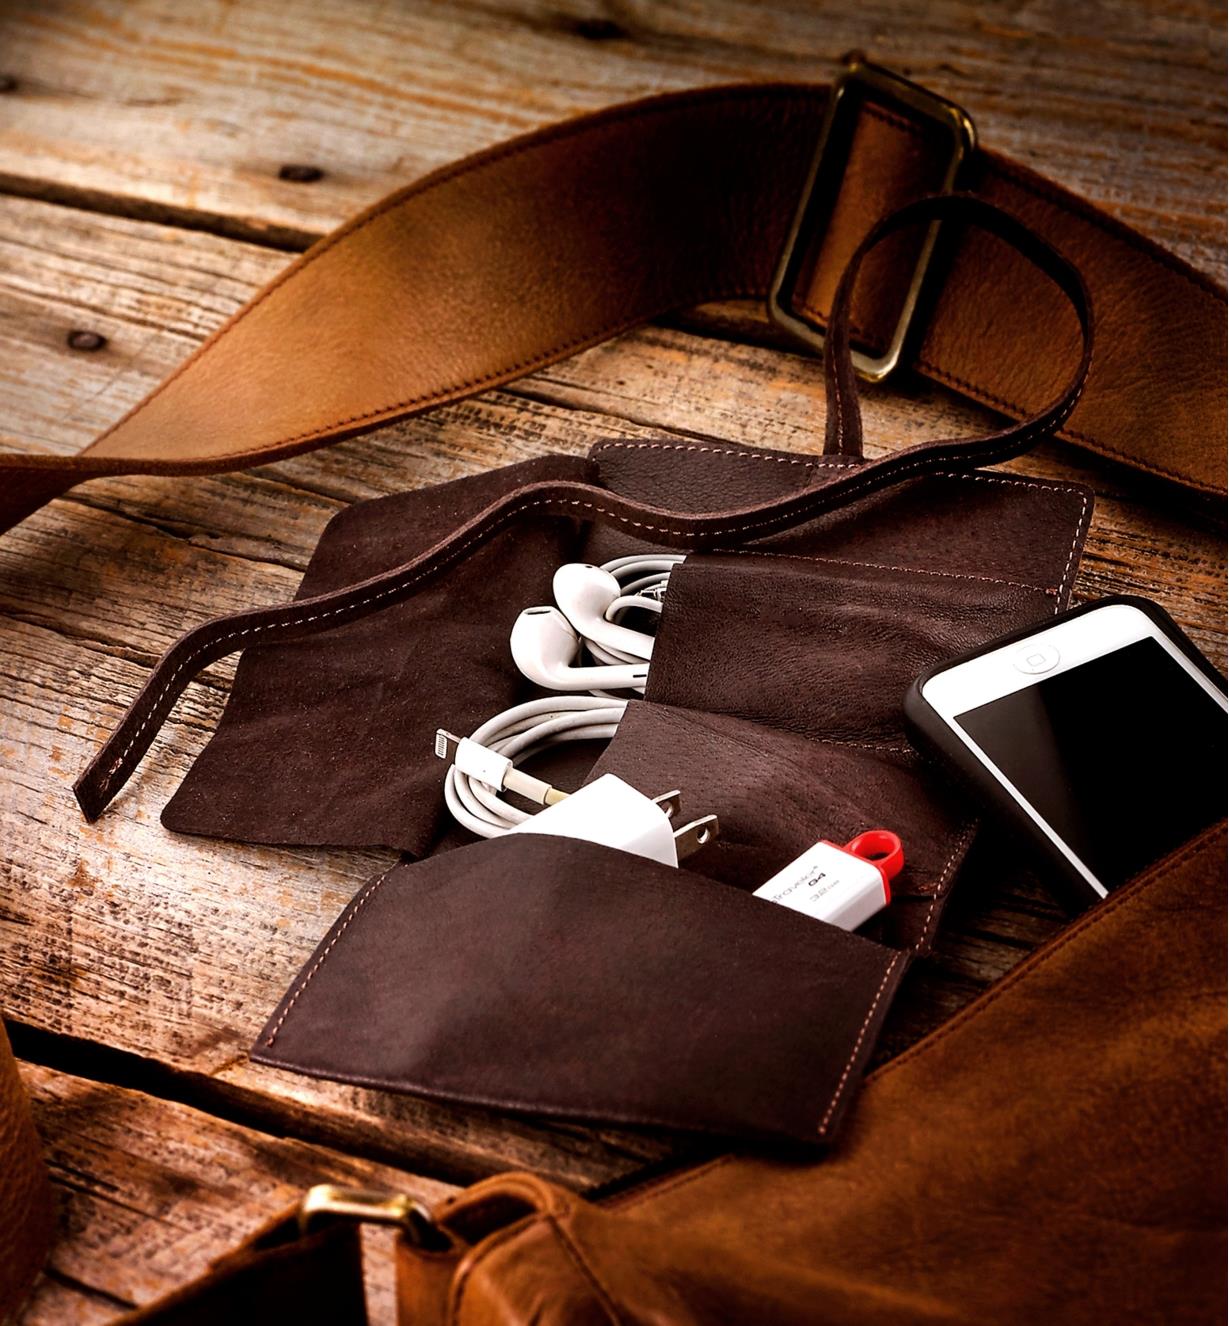 Étui en cuir contenant un câble de recharge, des écouteurs et une clé USB près d'un téléphone intelligent et d'un sac à main